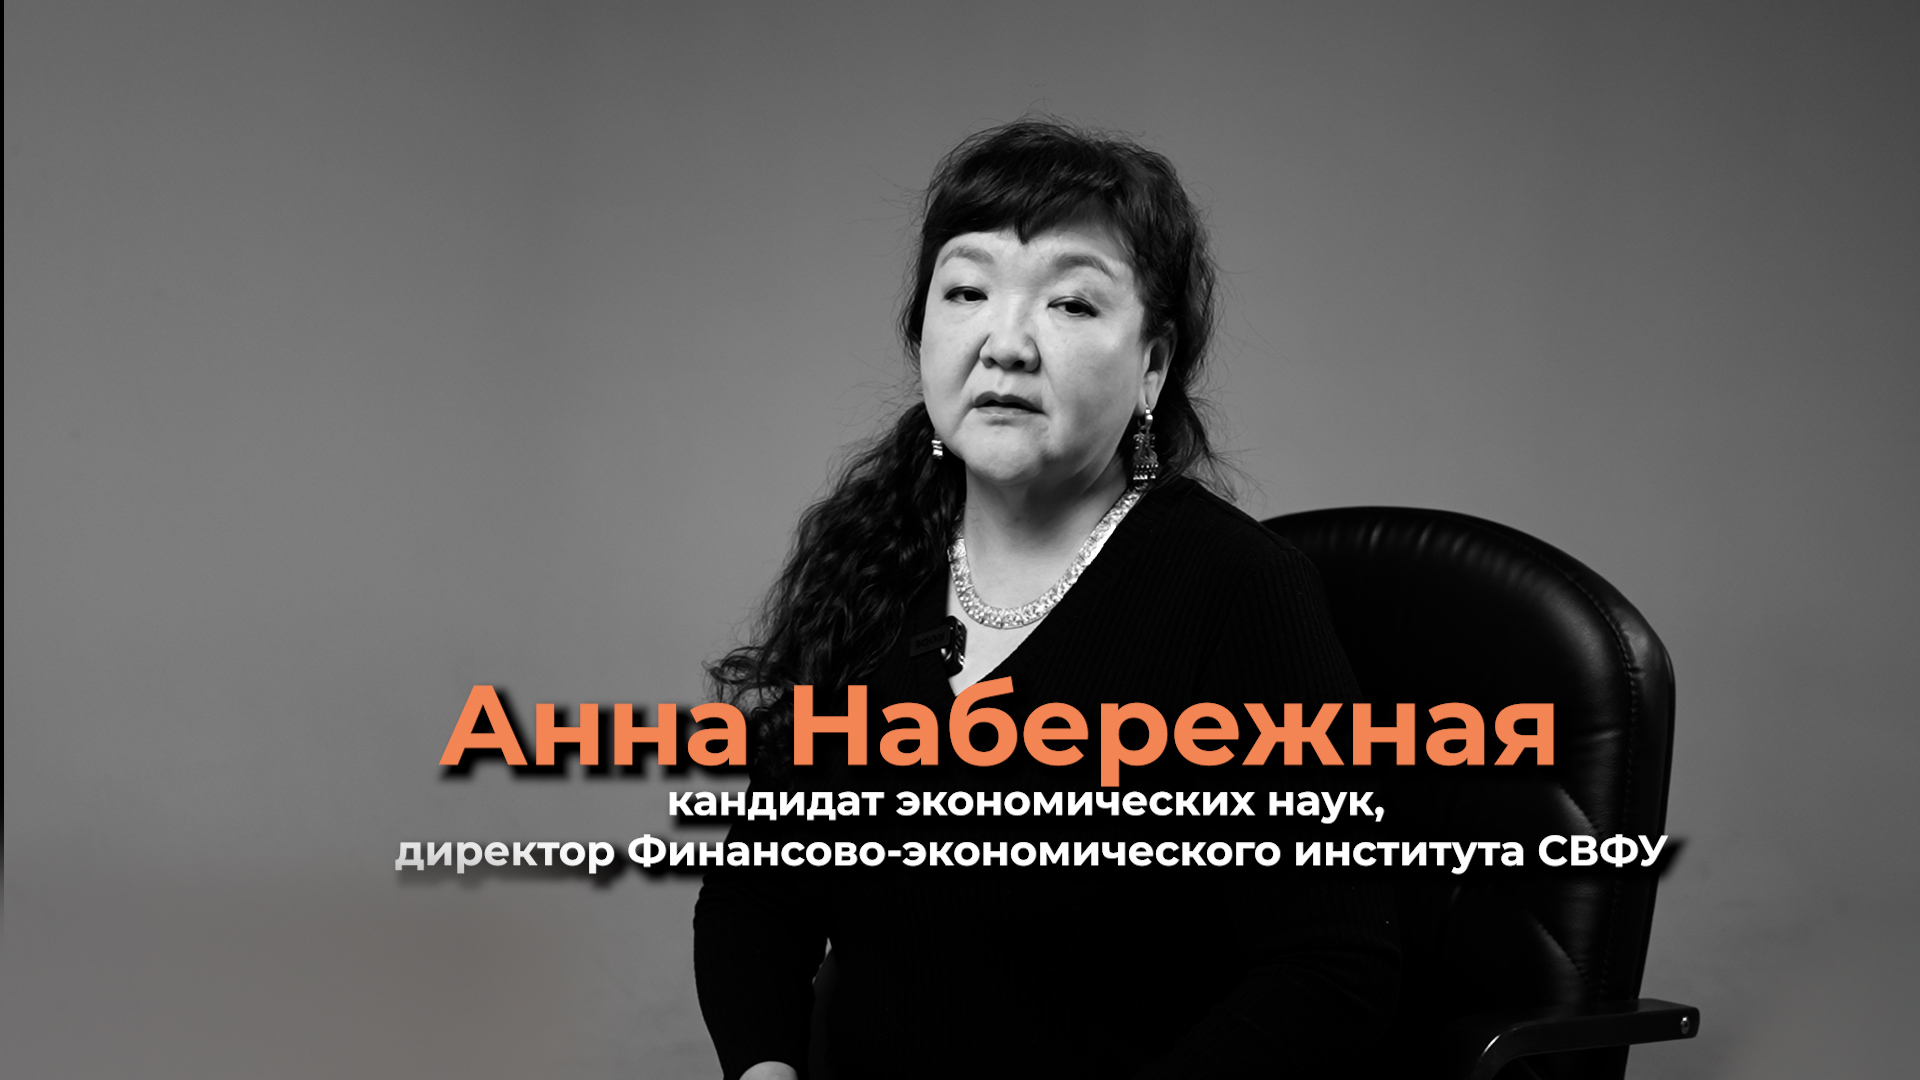 О развитии и становлении экономической науки в Республике Саха (Якутия)